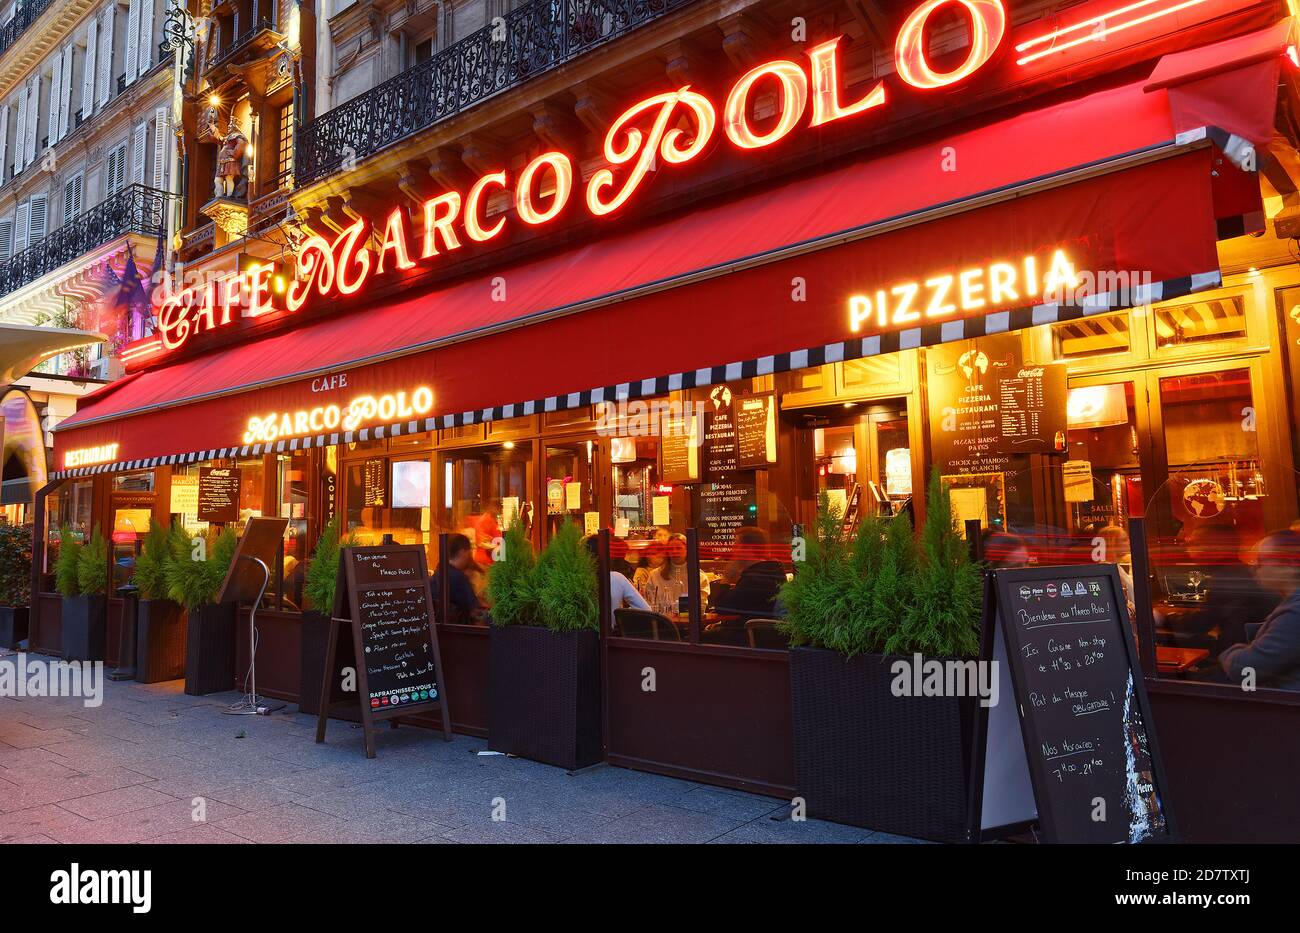 Ce restaurant de style brasserie porte le nom de l'explorateur Marco Polo,  situé près de la gare Saint Lazare, à Paris, en France Photo Stock - Alamy